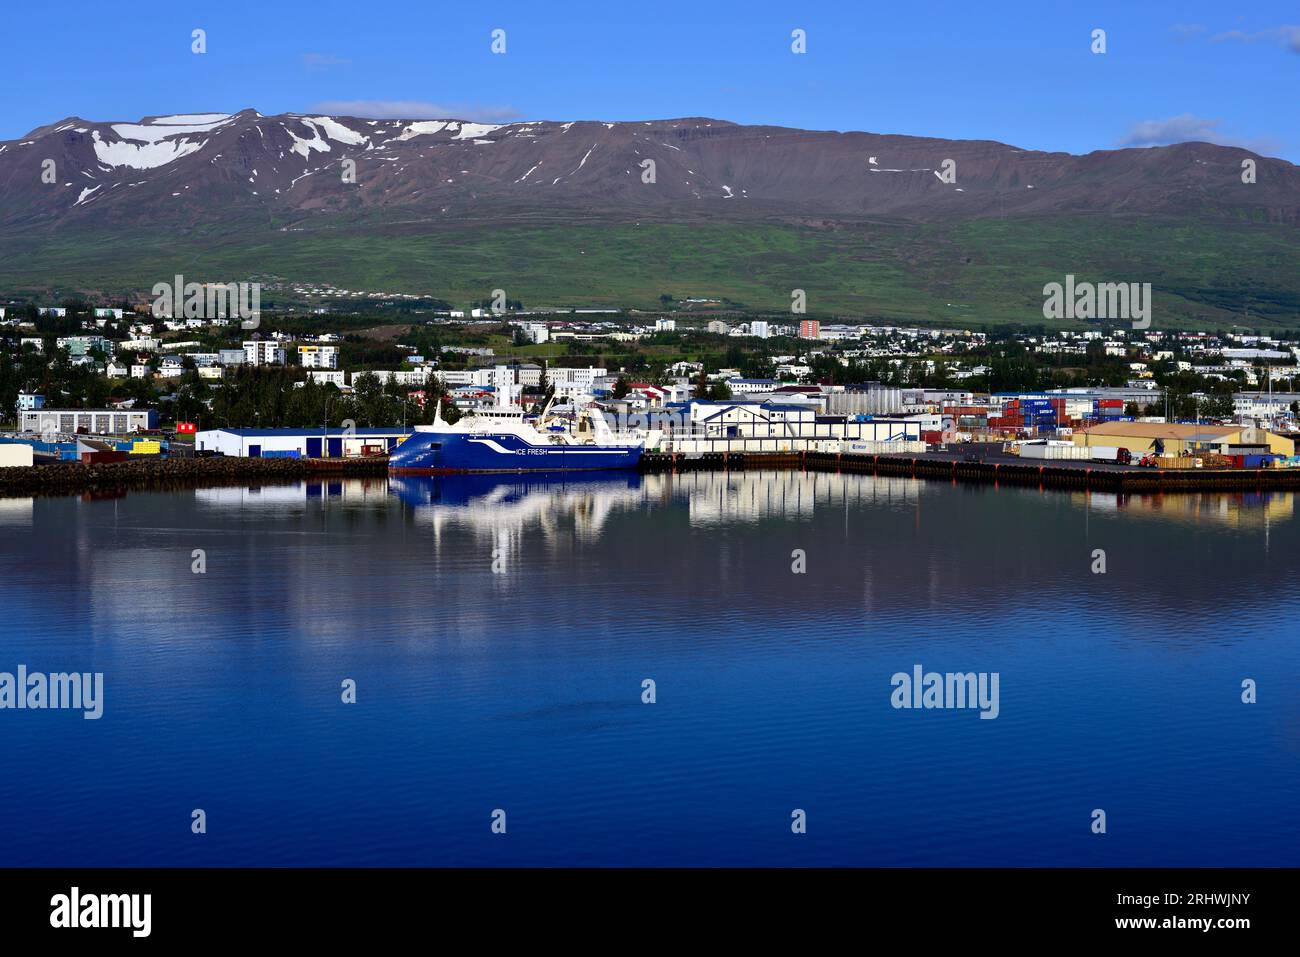 Das isländische Fischereifahrzeug Kaldbakur wird am frühen Morgen in seinem Heimathafen Akureyri im Nordosten Islands gesehen. Stockfoto